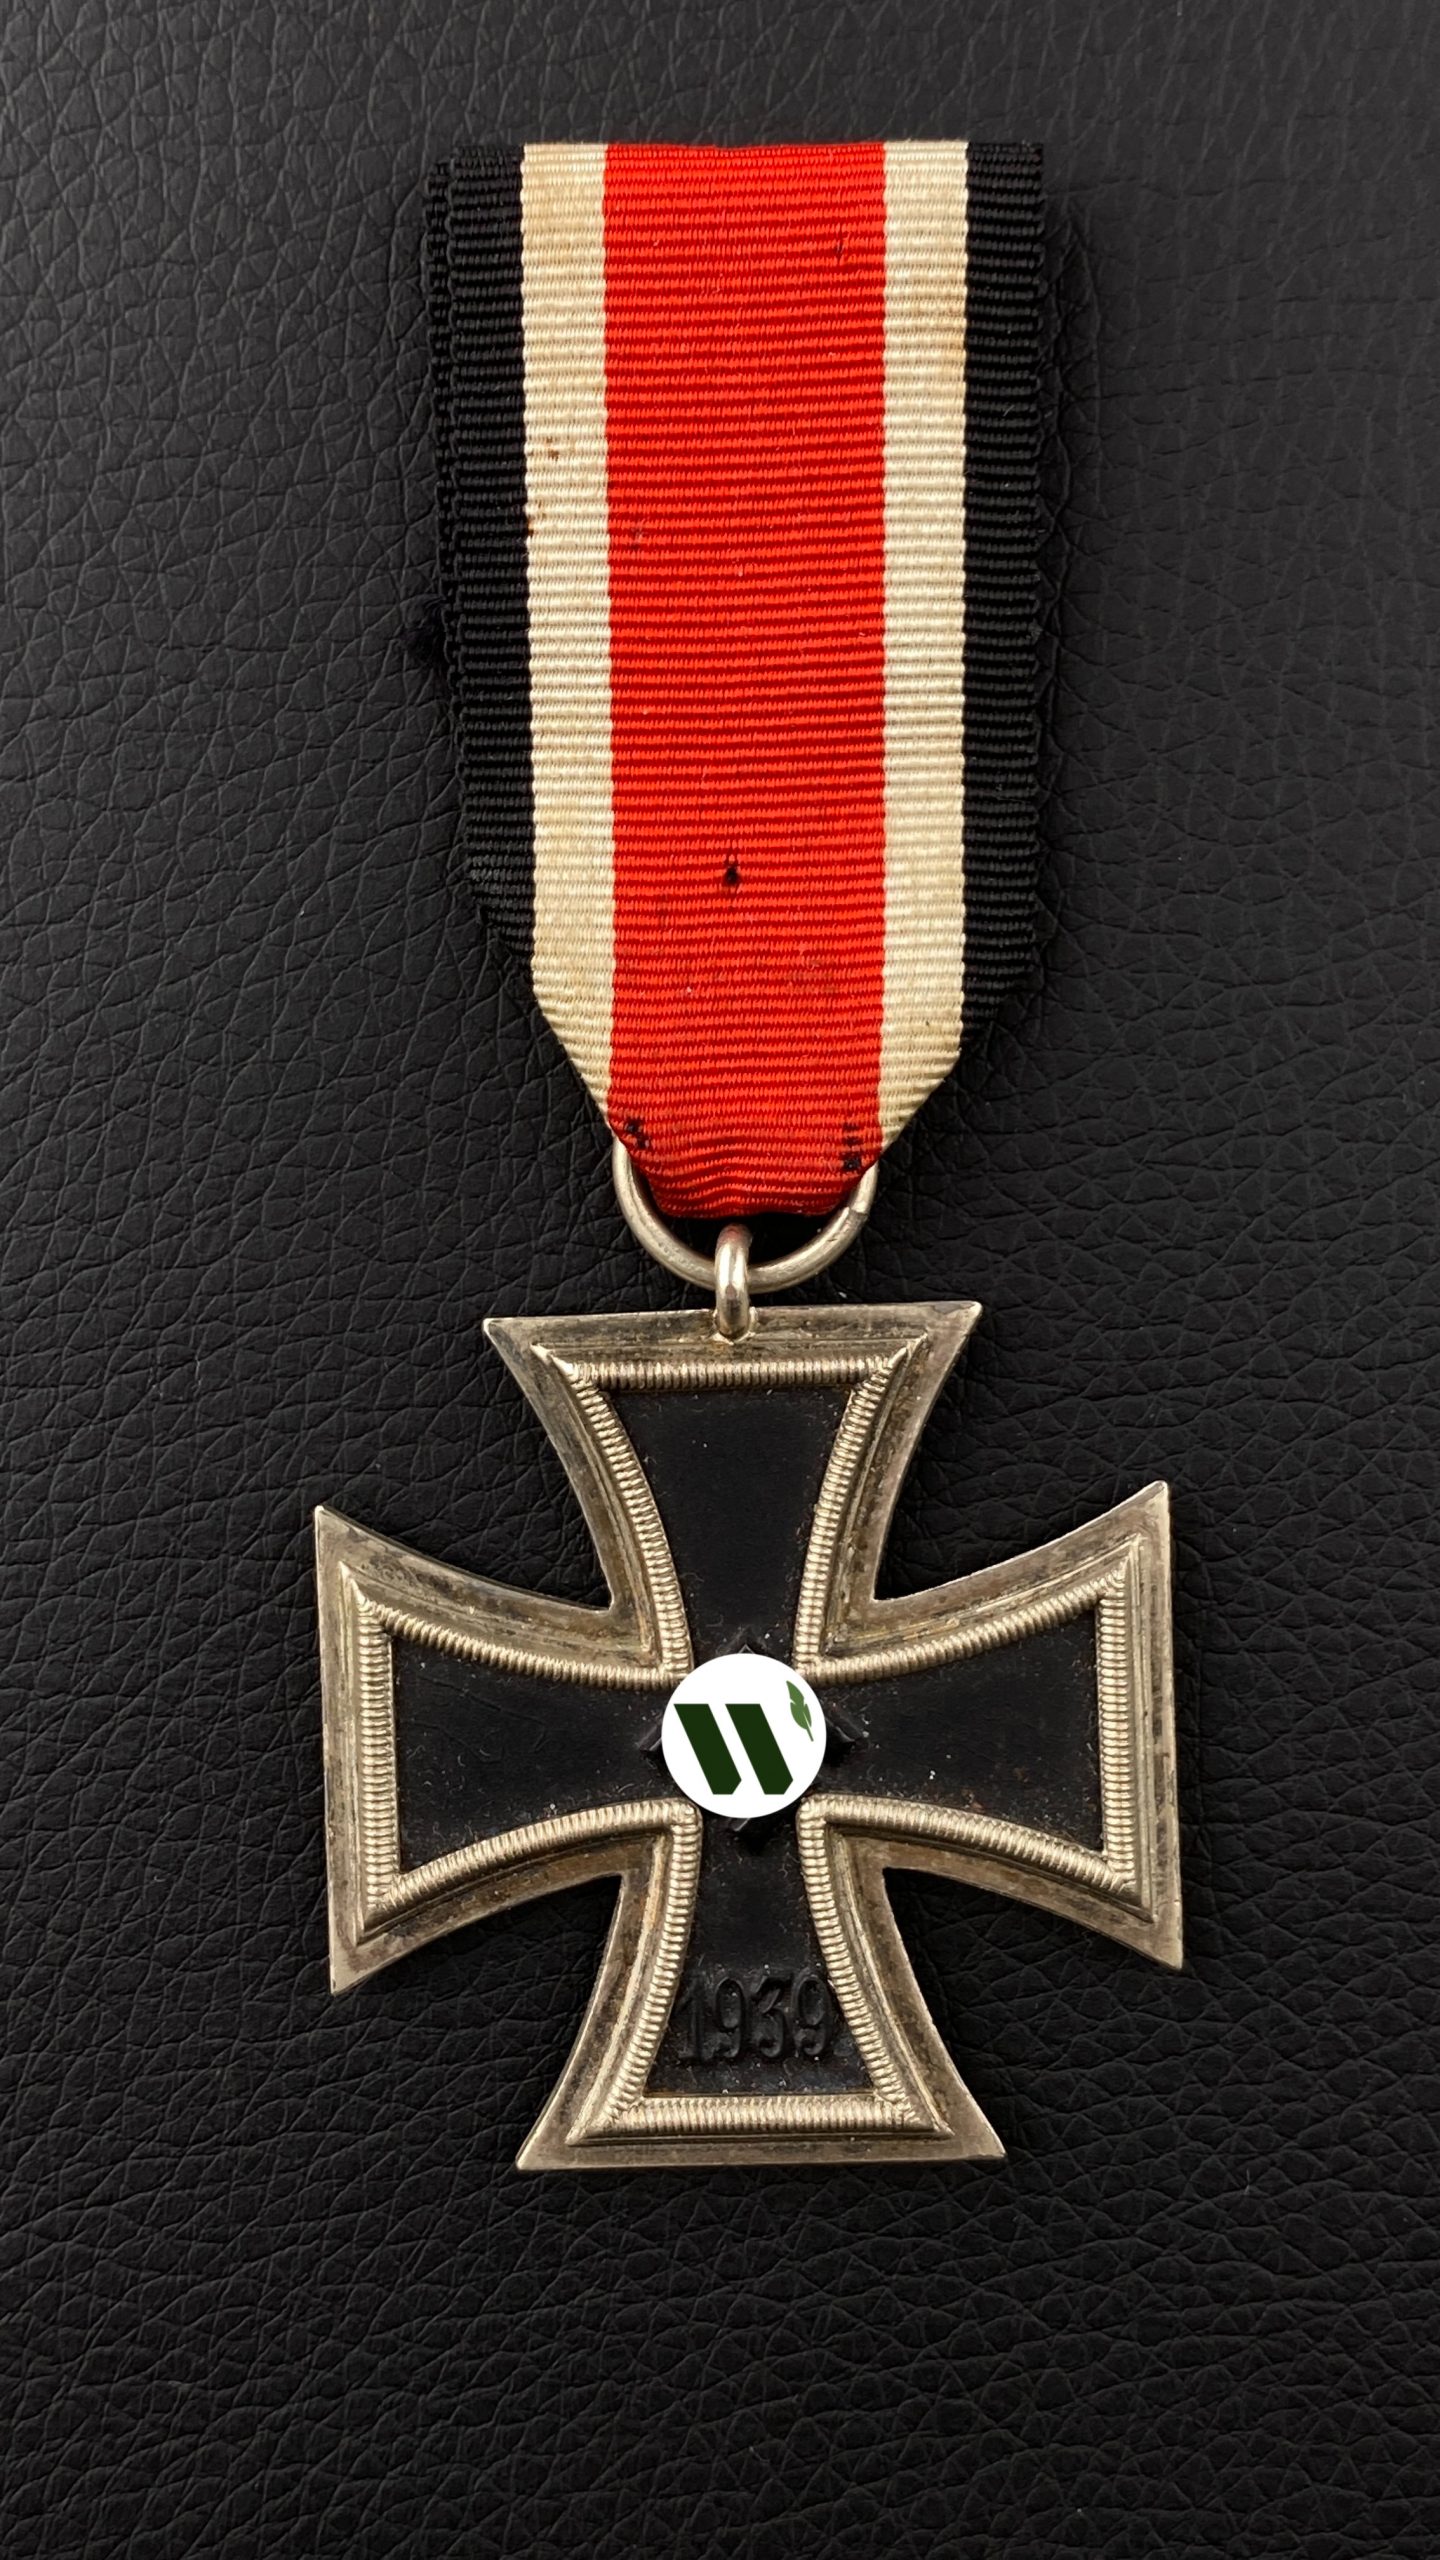  Железный крест 2-го класса 1939 года. Составной, магнитный.